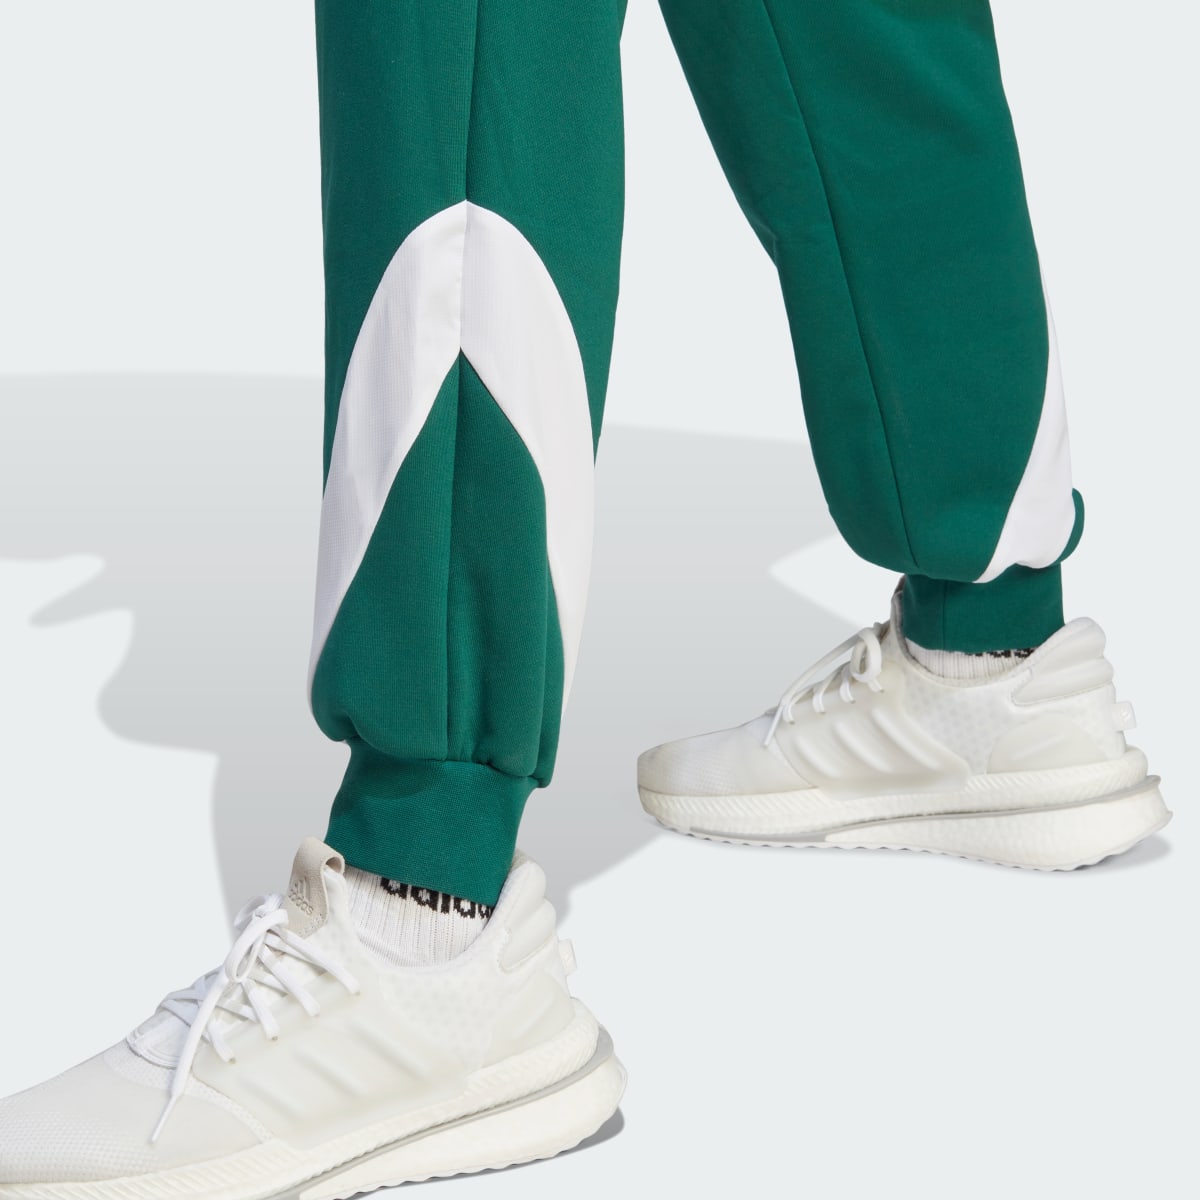 Adidas Fato de Treino com Capuz em Fleece Sportswear. 9